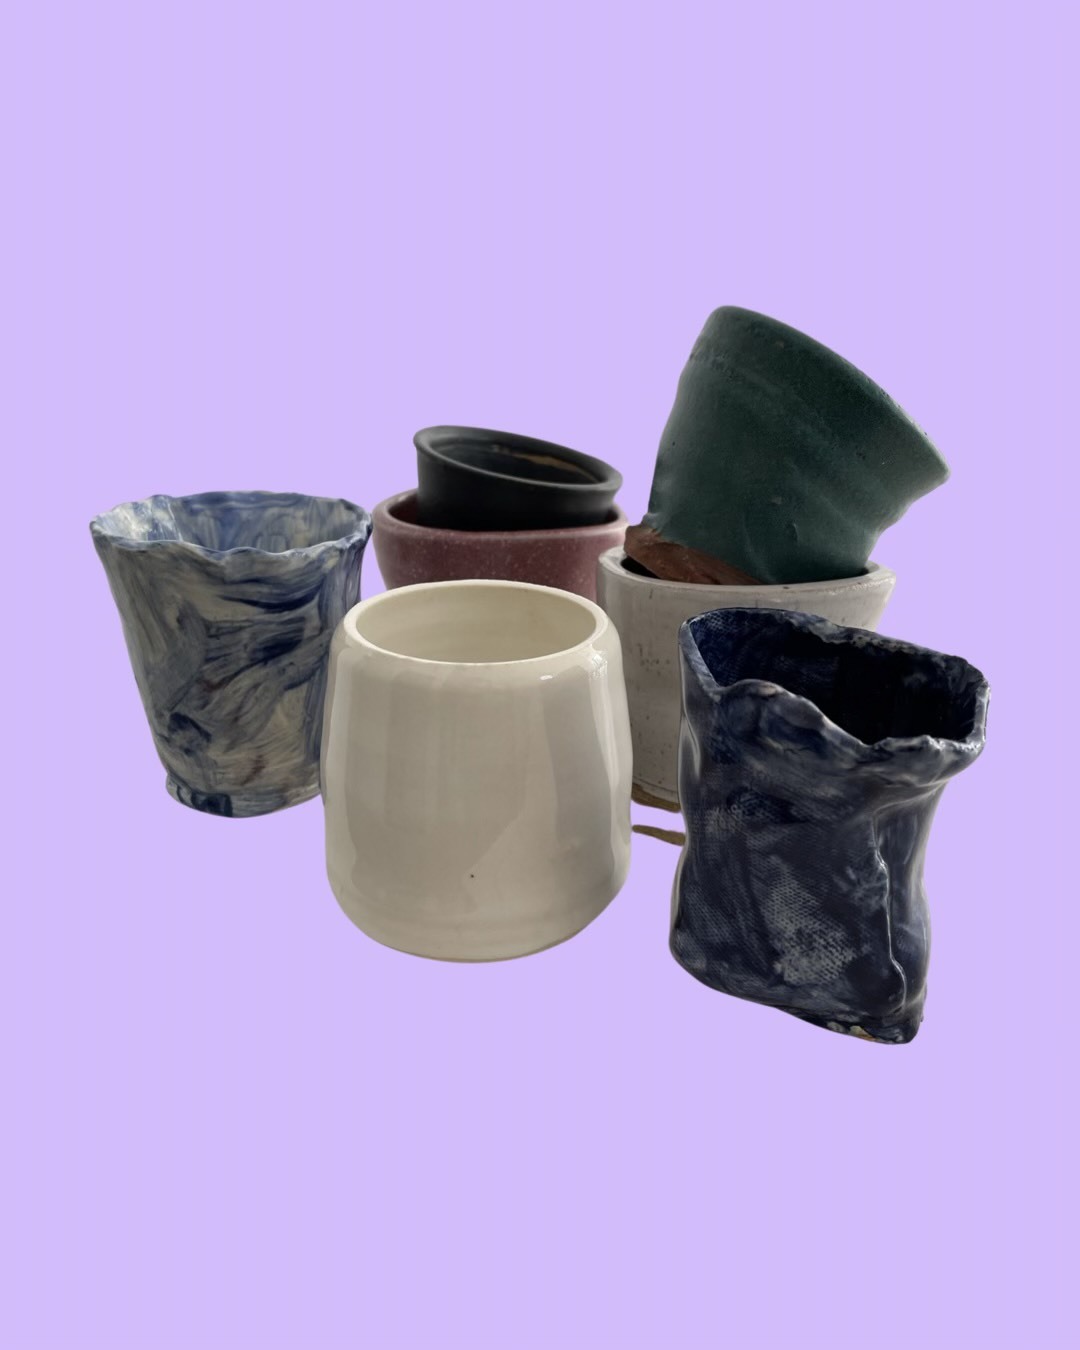 Artshack Brooklyn - Ceramics Now